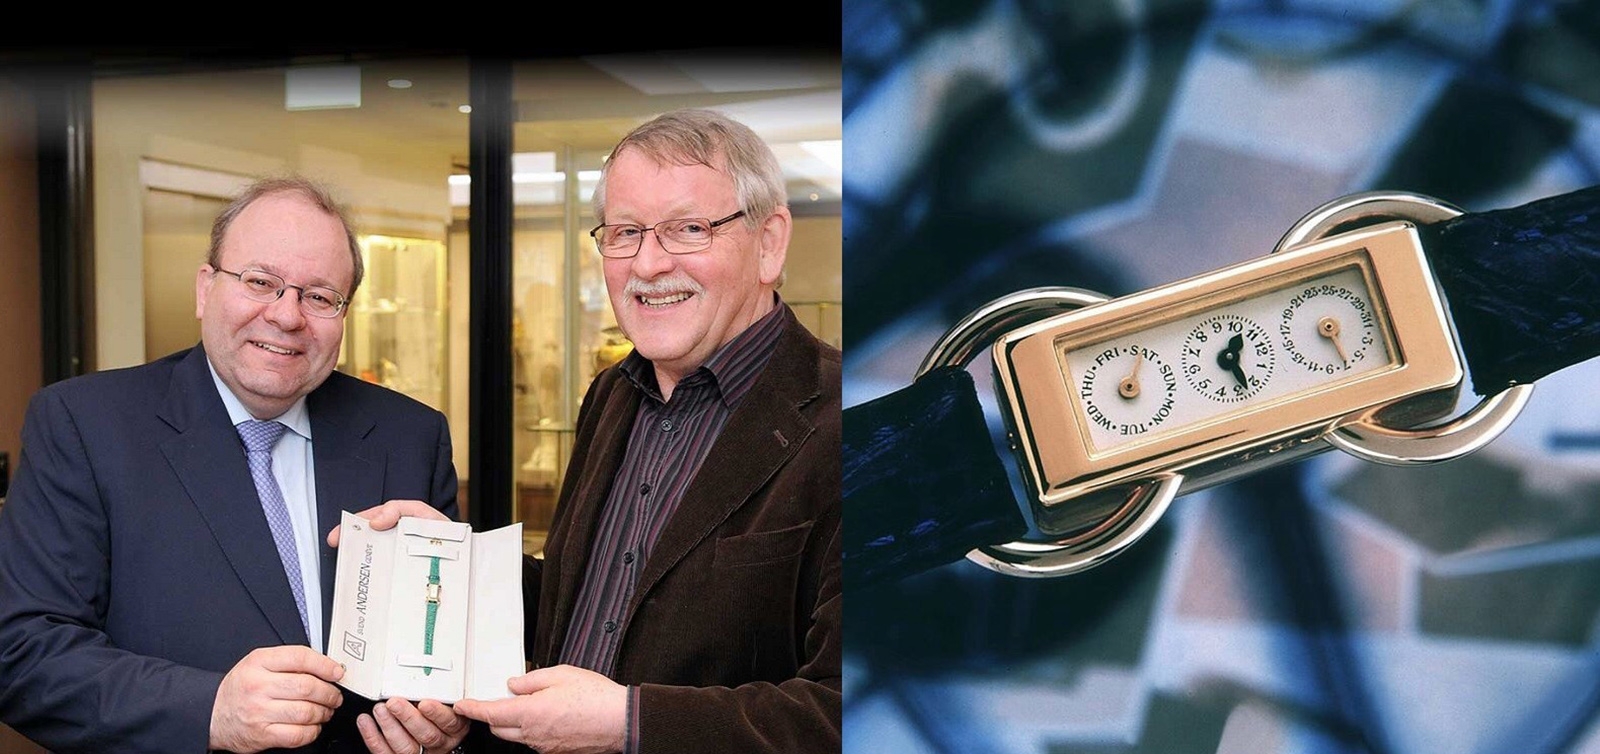 Ngài Svend Andersen đã trao tặng nguyên mẫu đồng hồ lịch nhỏ nhất thế giới cho nhà bán lẻ đồng hồ Thuỵ Sỹ René Beyer để đặt trong bảo tàng Beyer Watch Museum được đặt tại thành phố Zurich. Chức năng lịch của chiếc đồng hồ này gói gọn trong mô đun chỉ dày 1,4mm lắp ngay trên bộ máy nền Lecoultre cal. 104